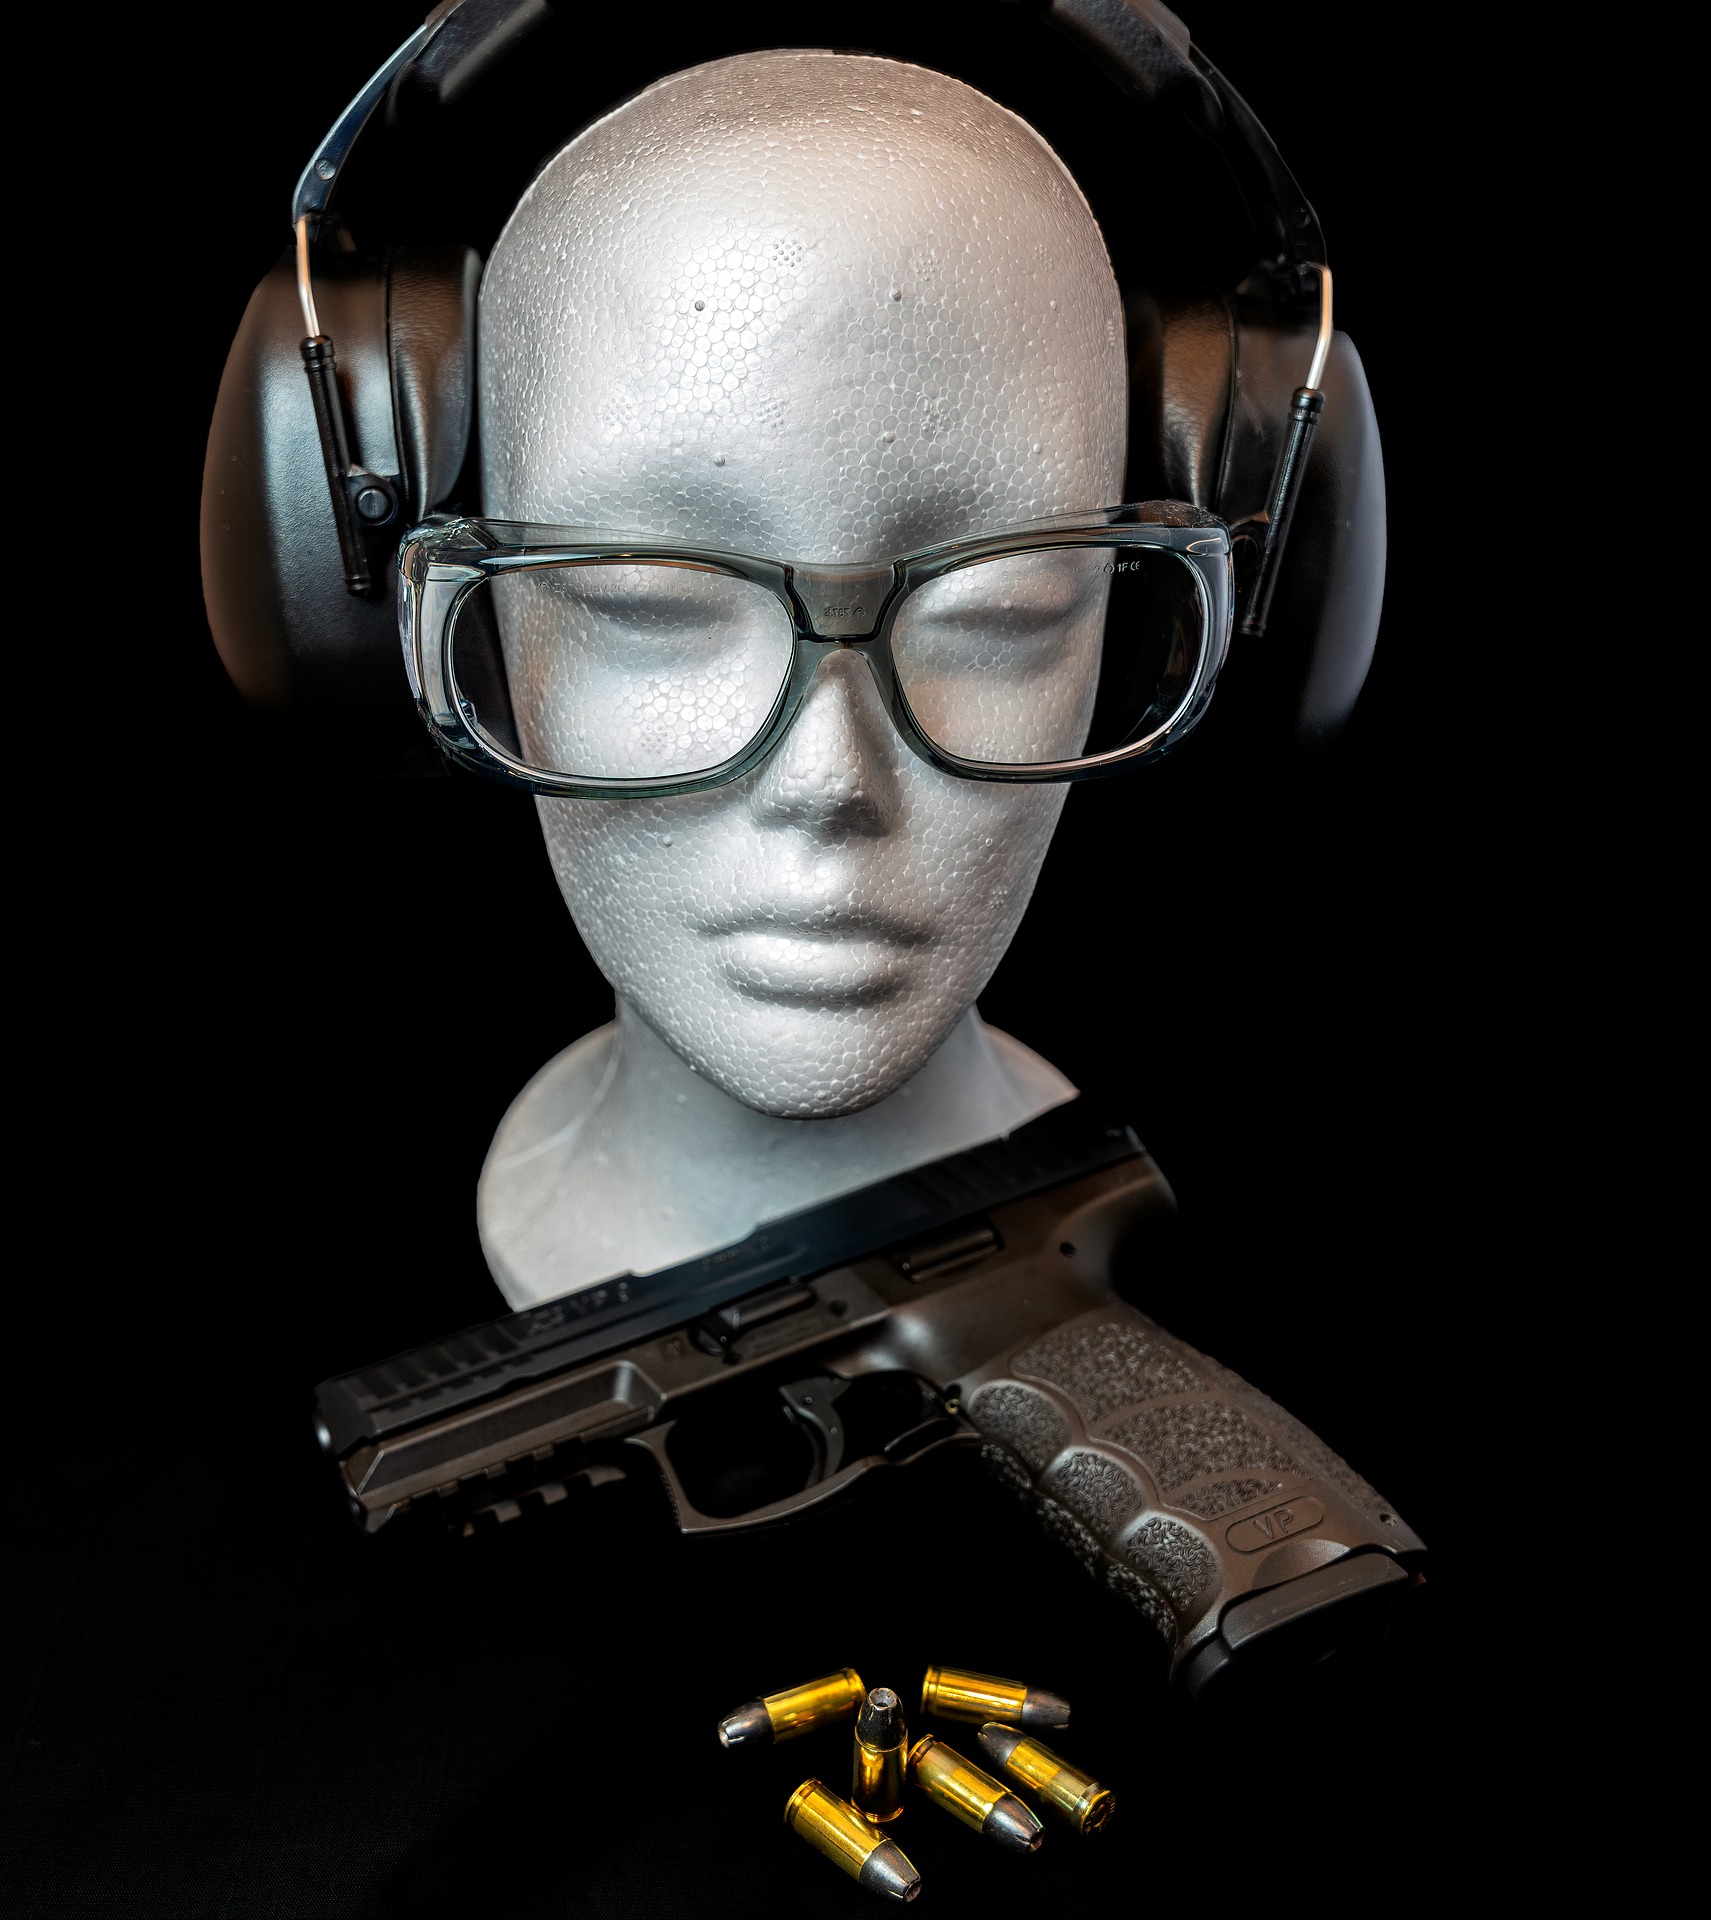 Ochronniki słuchu dla strzelców z najwyższej półki. Czyli o tym, jak technologia pozwala zadbać o zdrowie - Zdjęcie główne